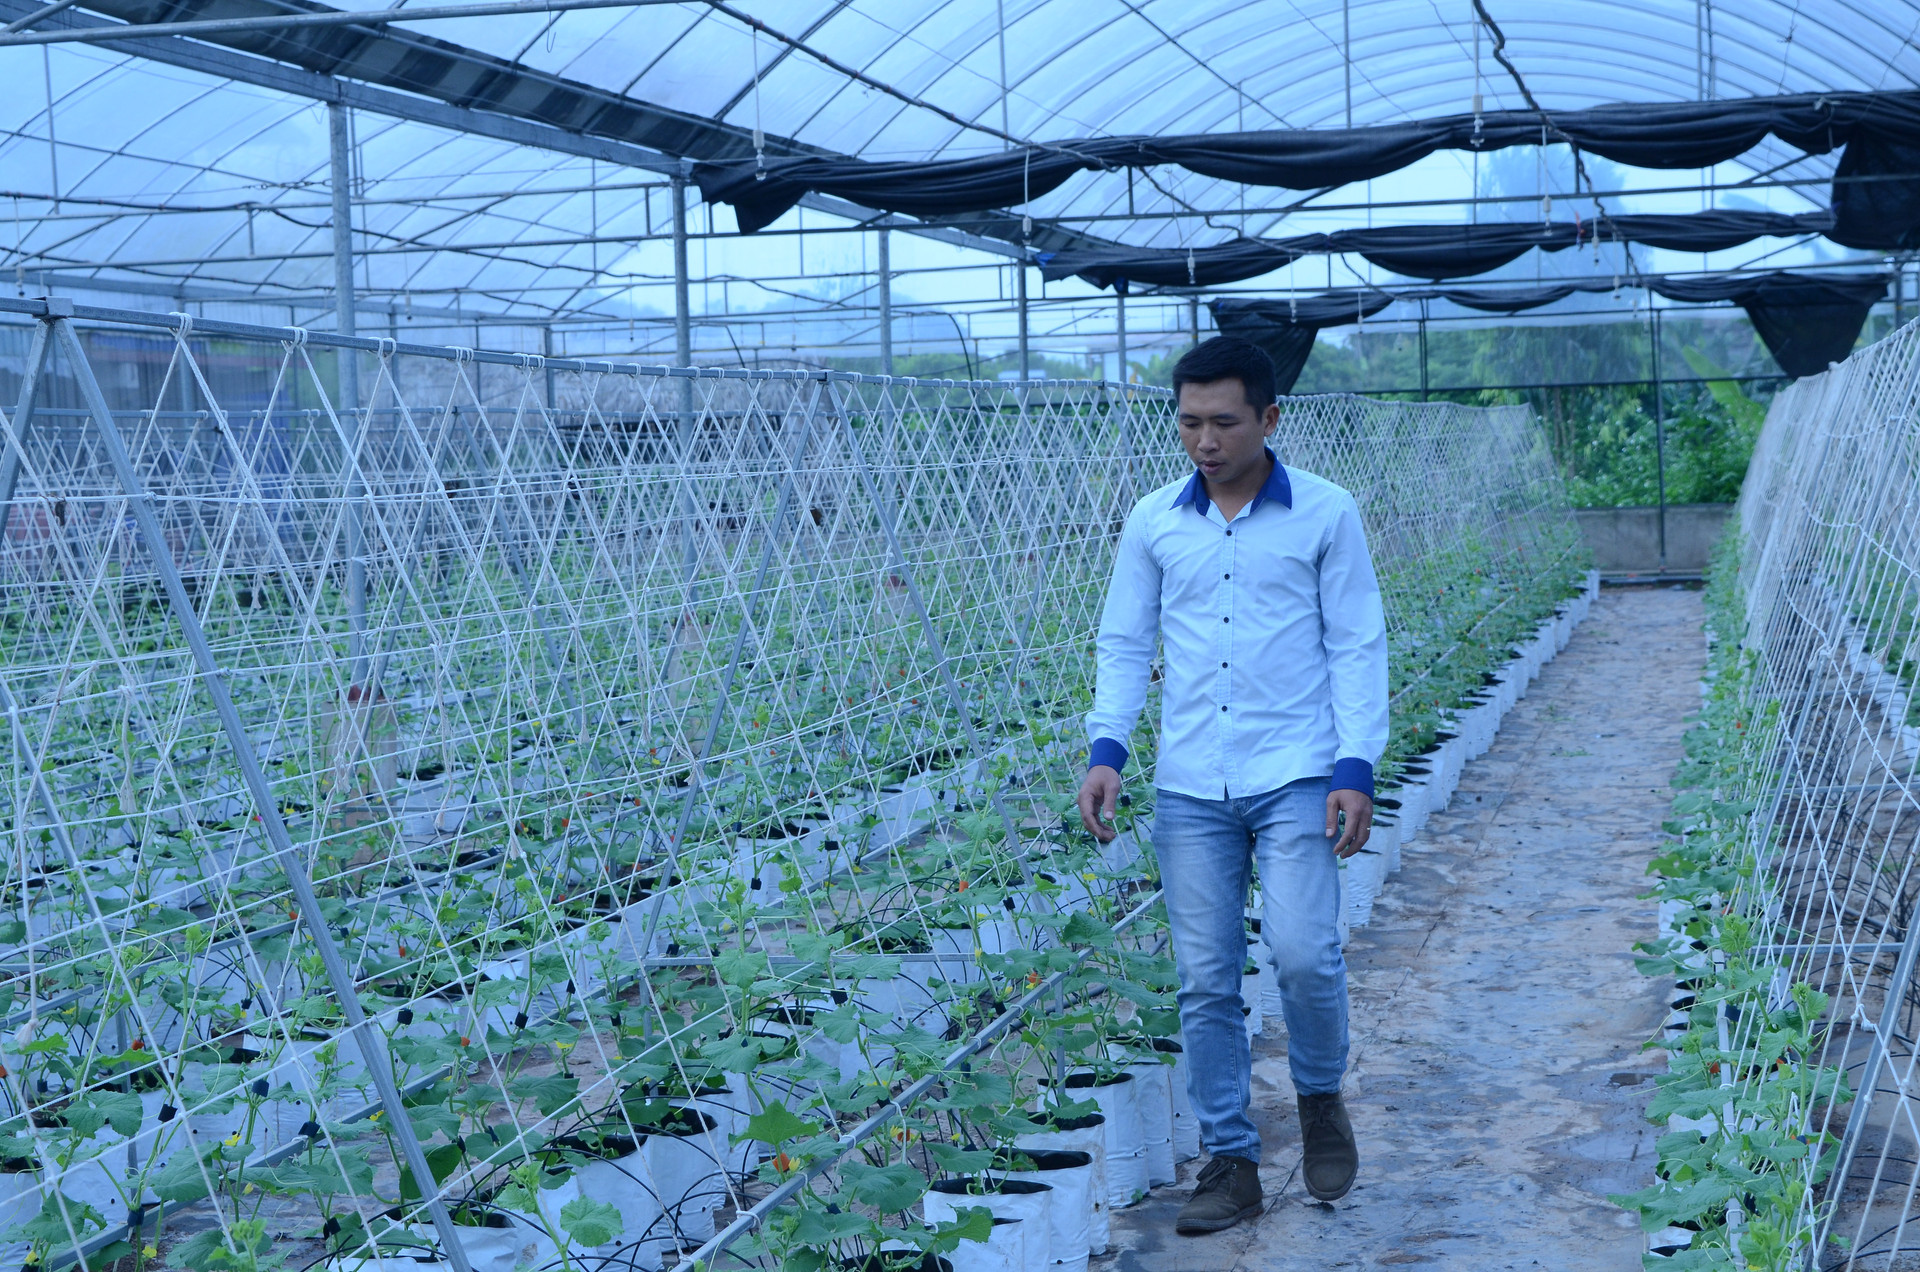 Mô hình trồng rau, dưa trong nhà lưới ở huyện Mỹ Lộc